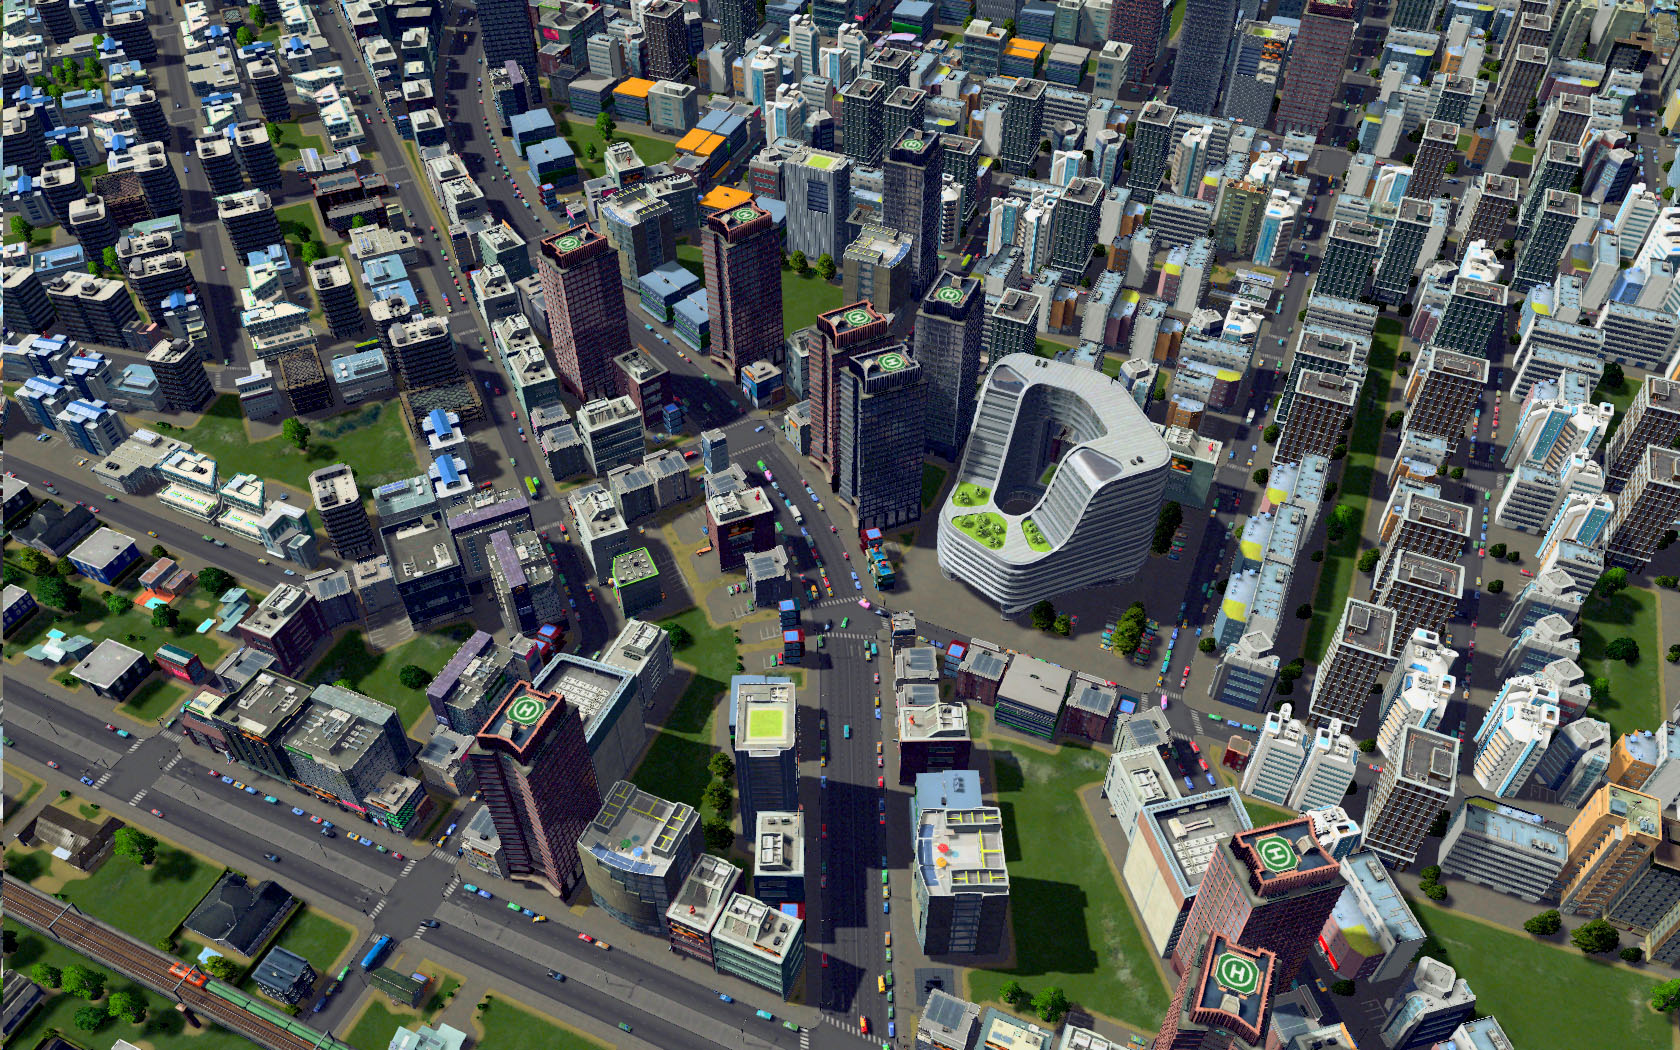 Городской симулятор игра